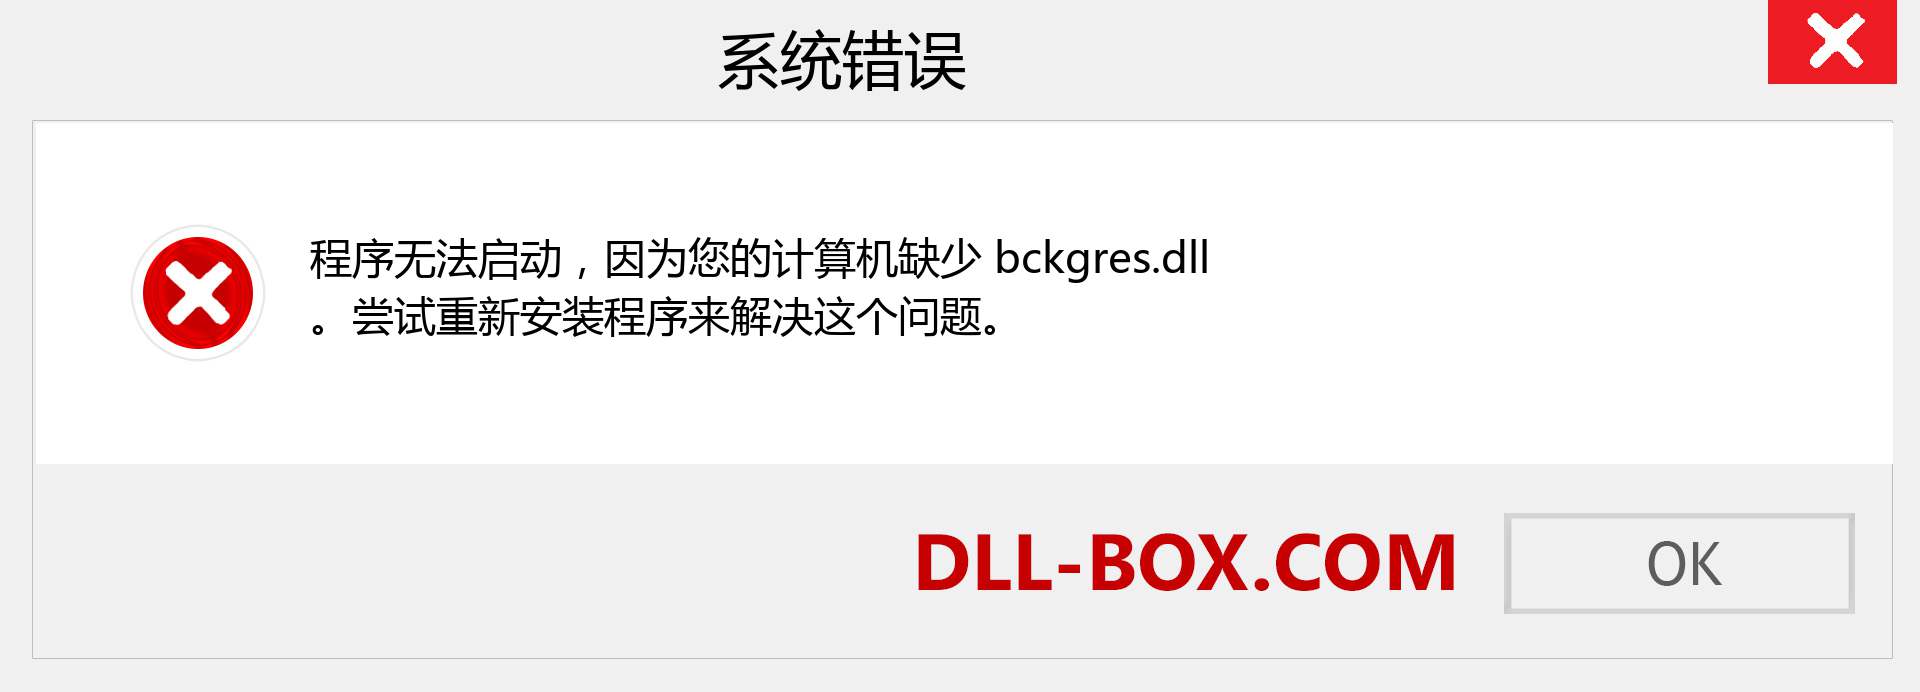 bckgres.dll 文件丢失？。 适用于 Windows 7、8、10 的下载 - 修复 Windows、照片、图像上的 bckgres dll 丢失错误